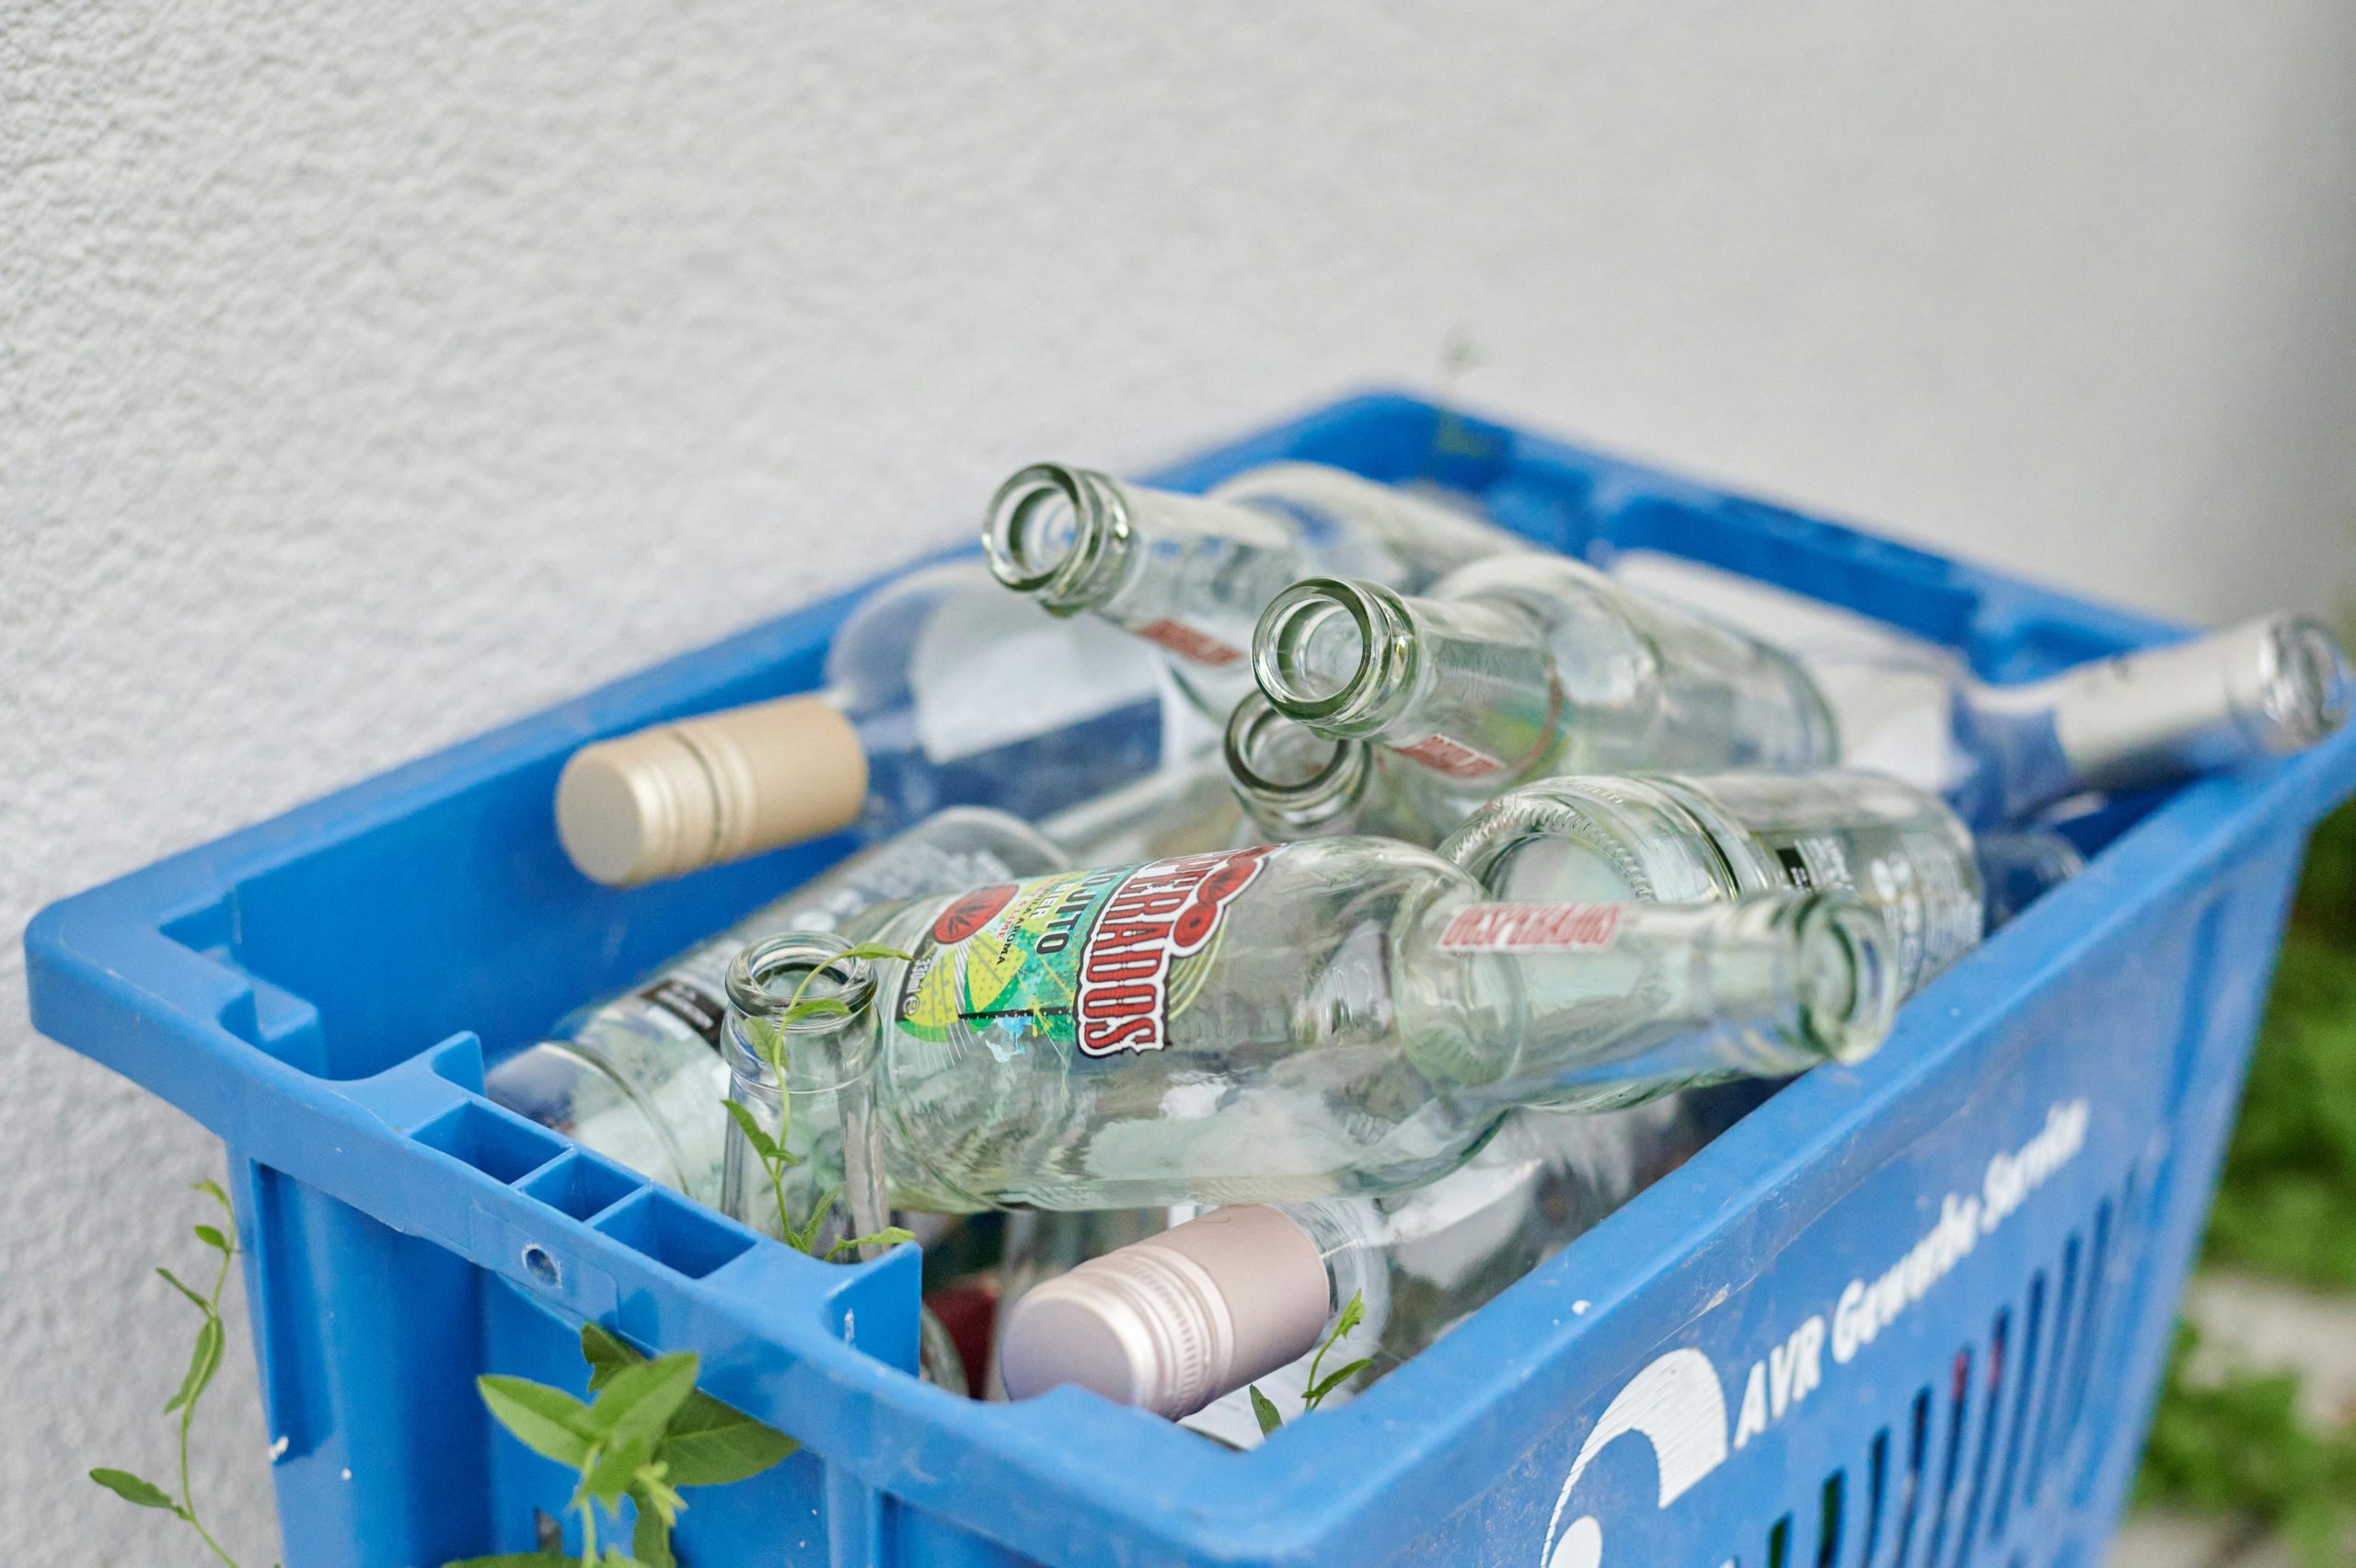 Canasta llena de envases de vidrio listos para enviar a reciclaje.